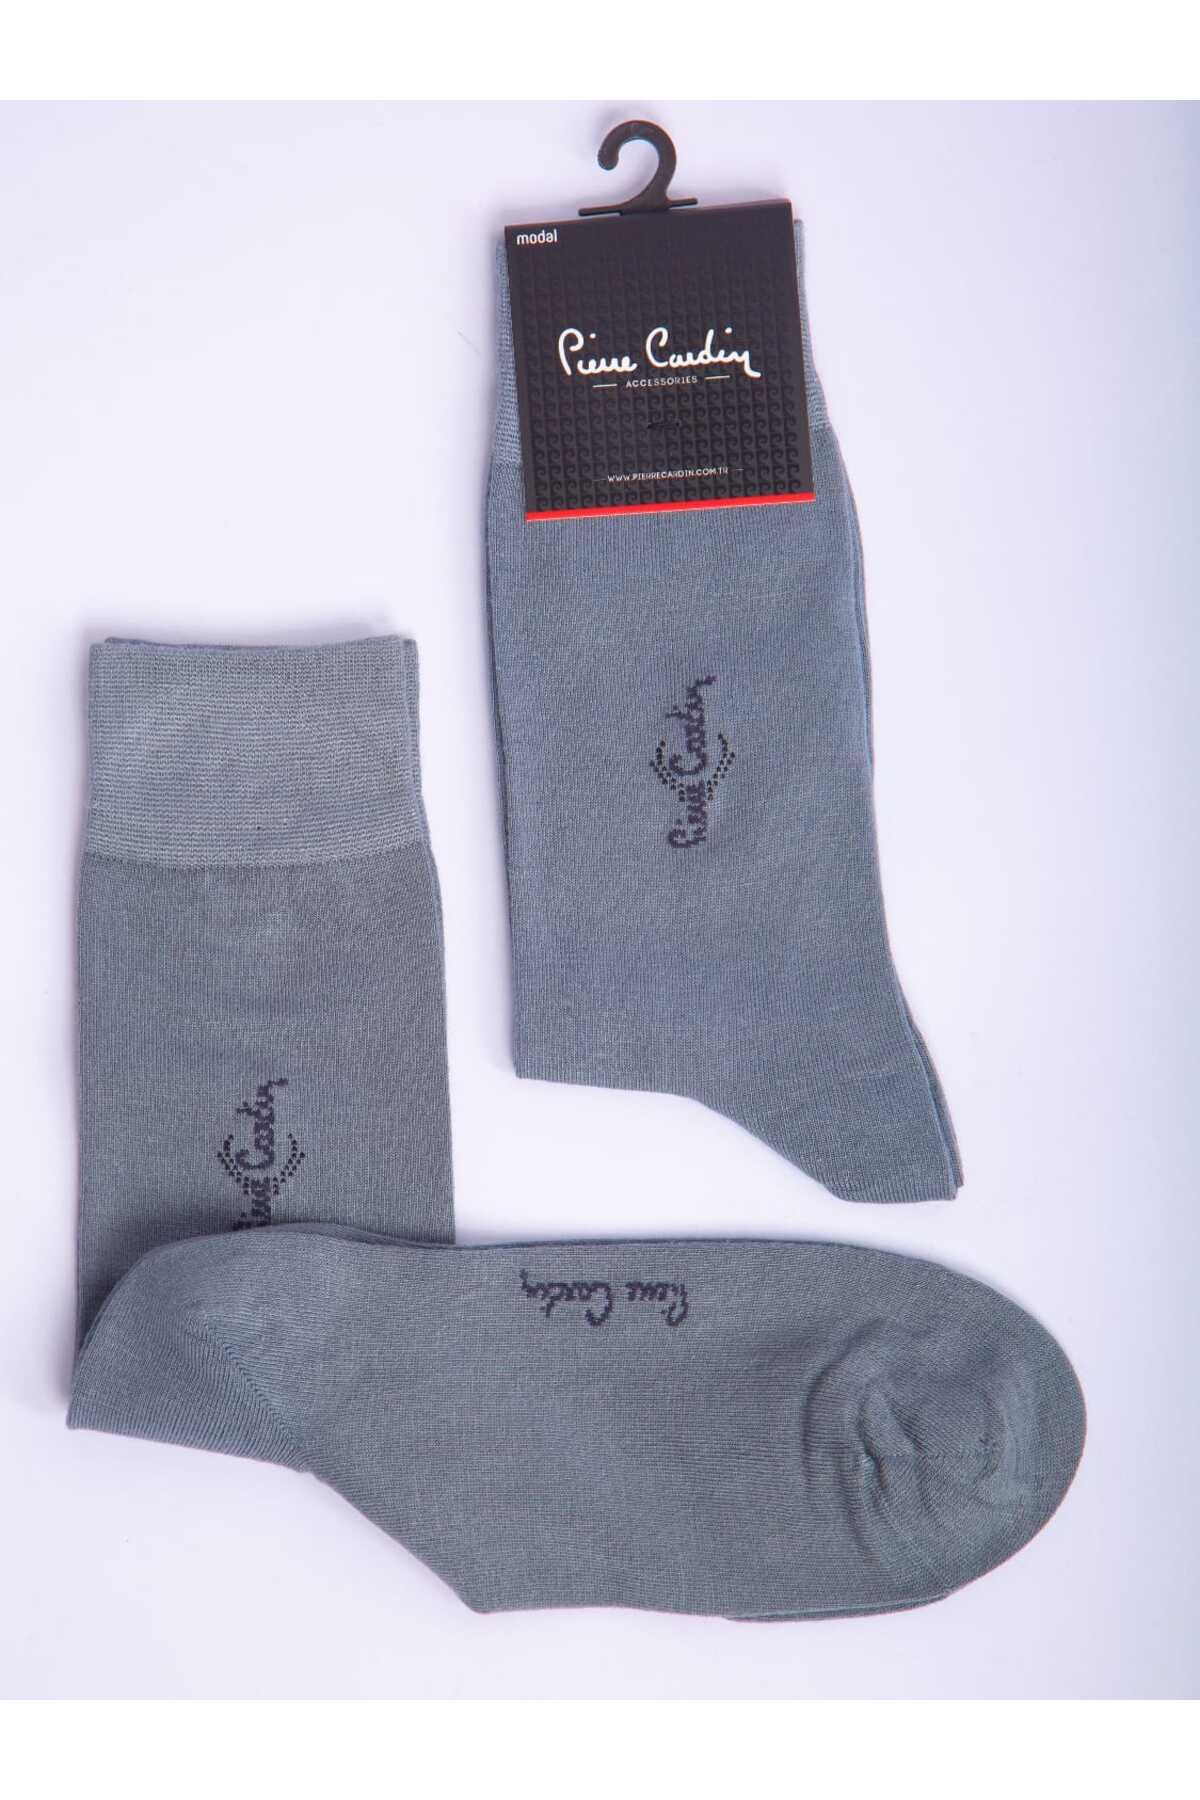 Pierre Cardin Modal Tekli Gri Renkli Erkek Uzun Soket Çorap Code 293